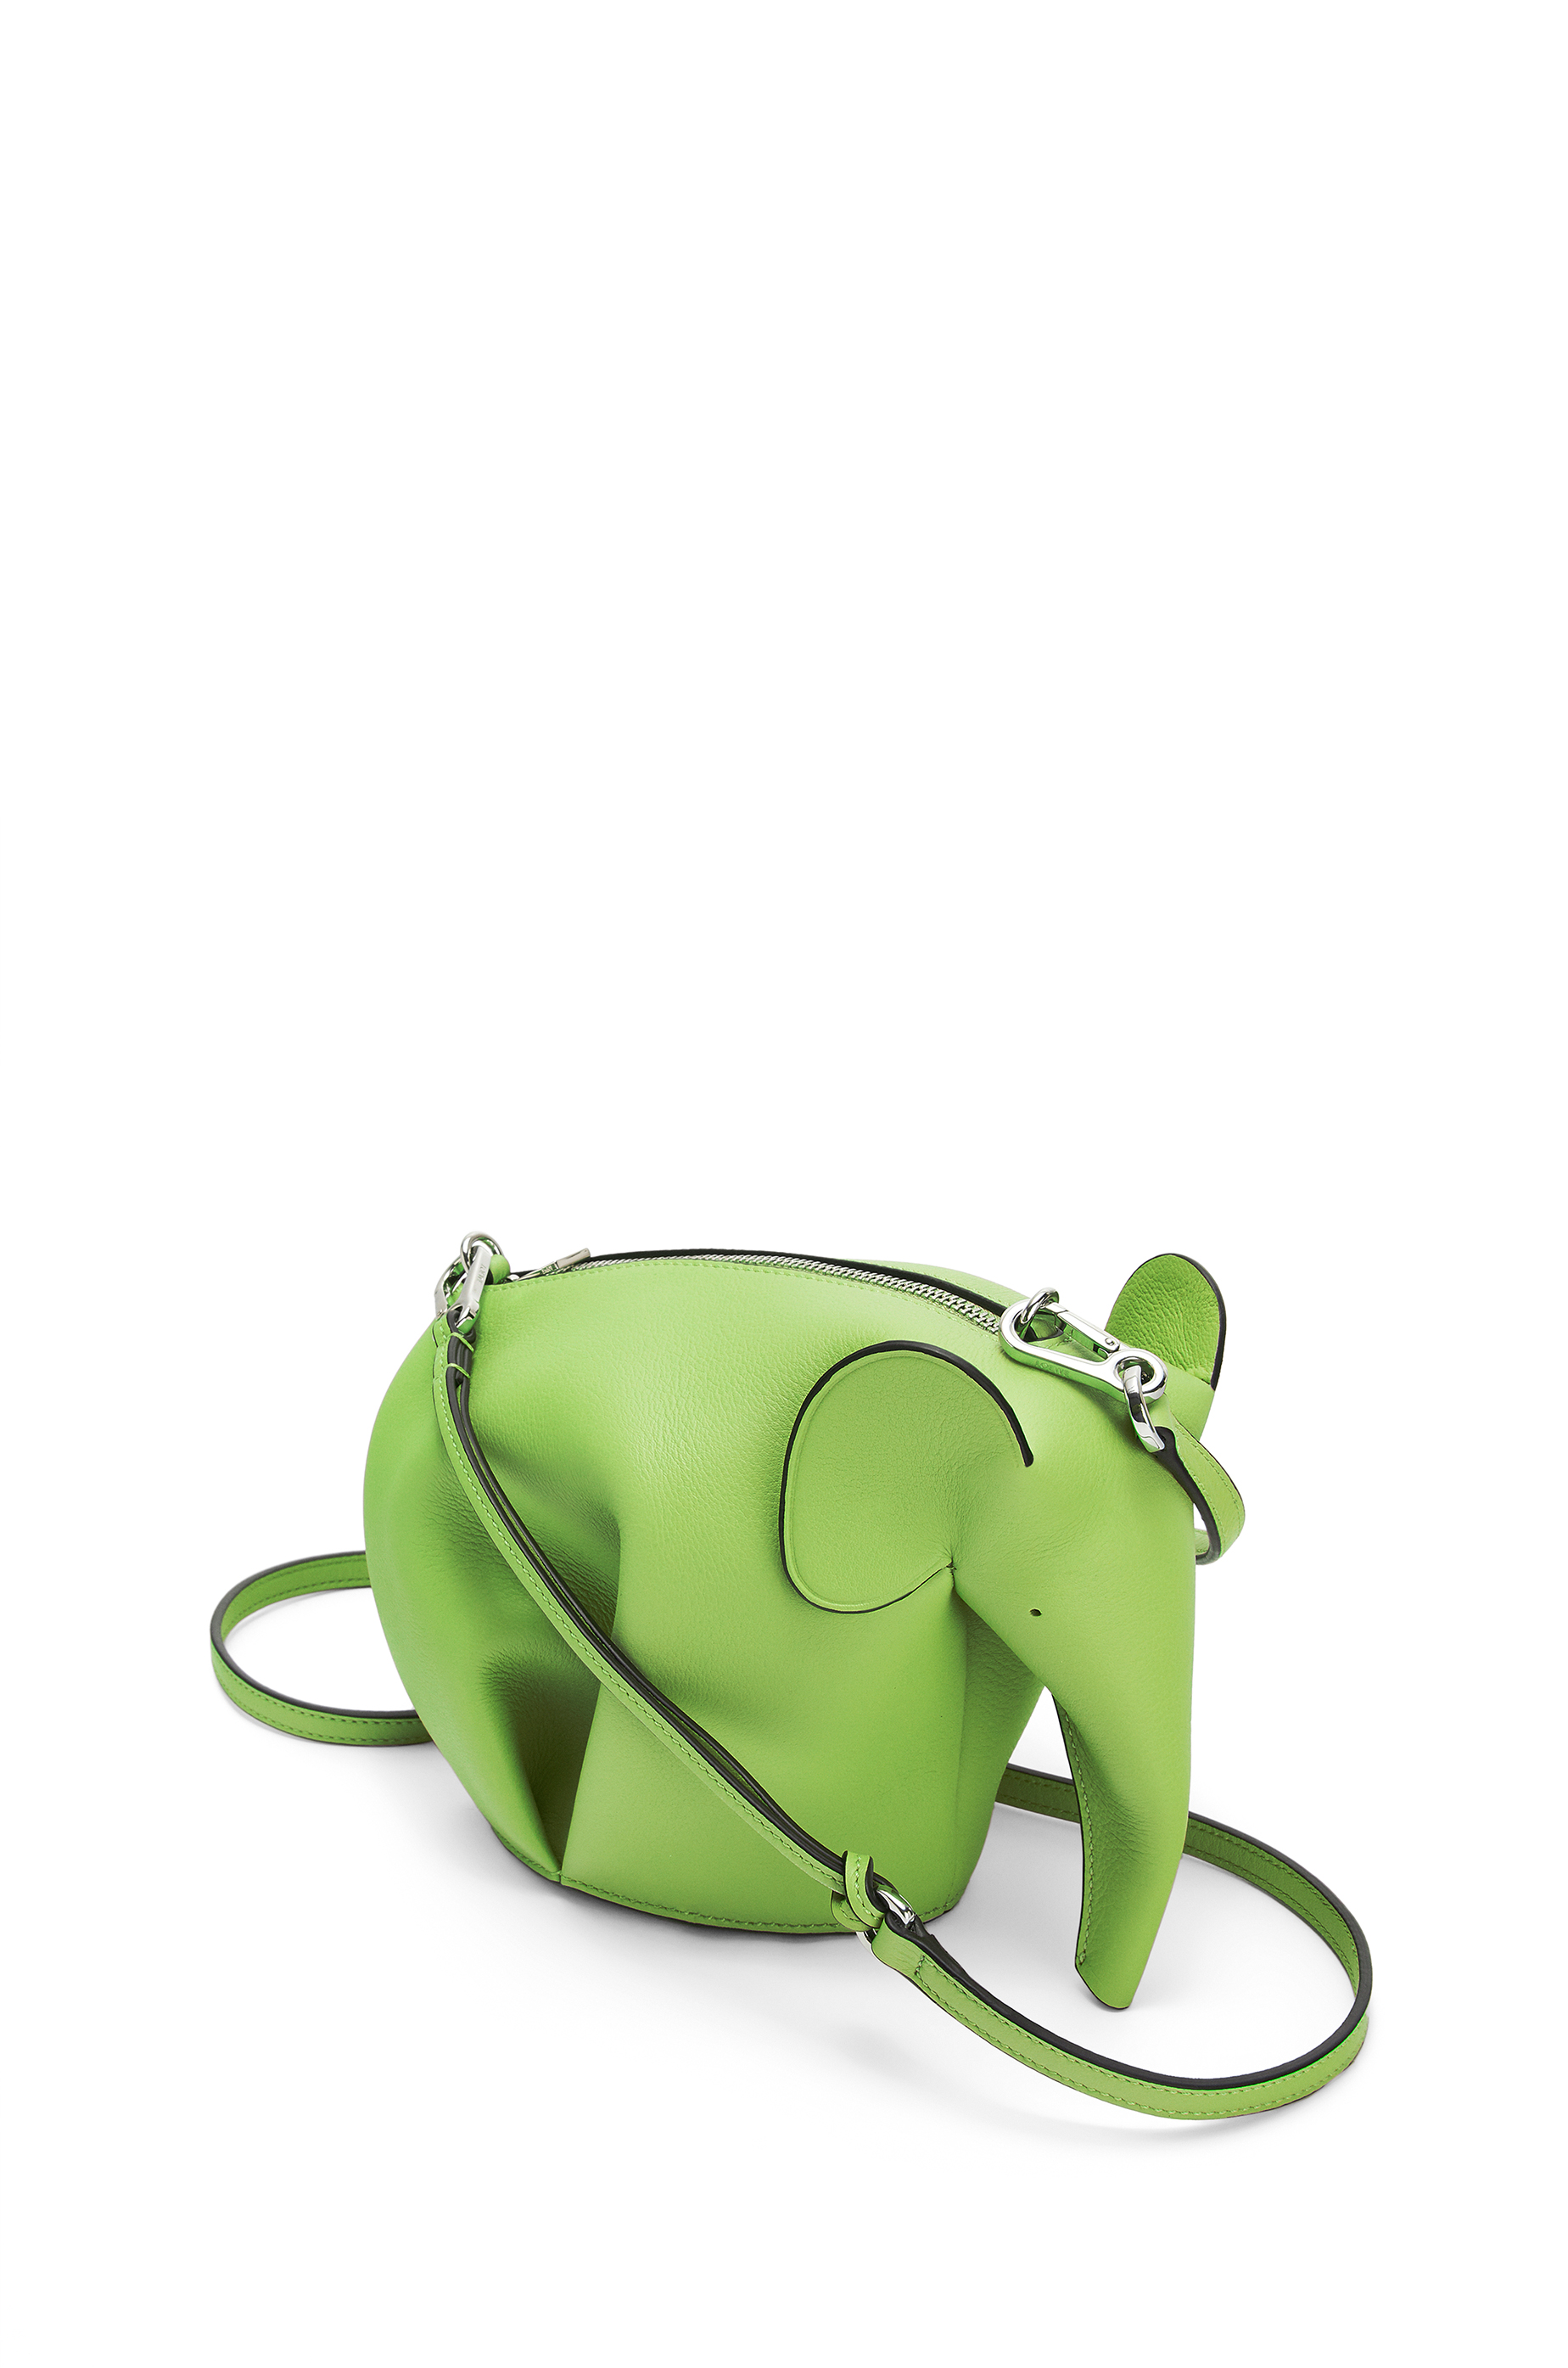 elephant bag loewe